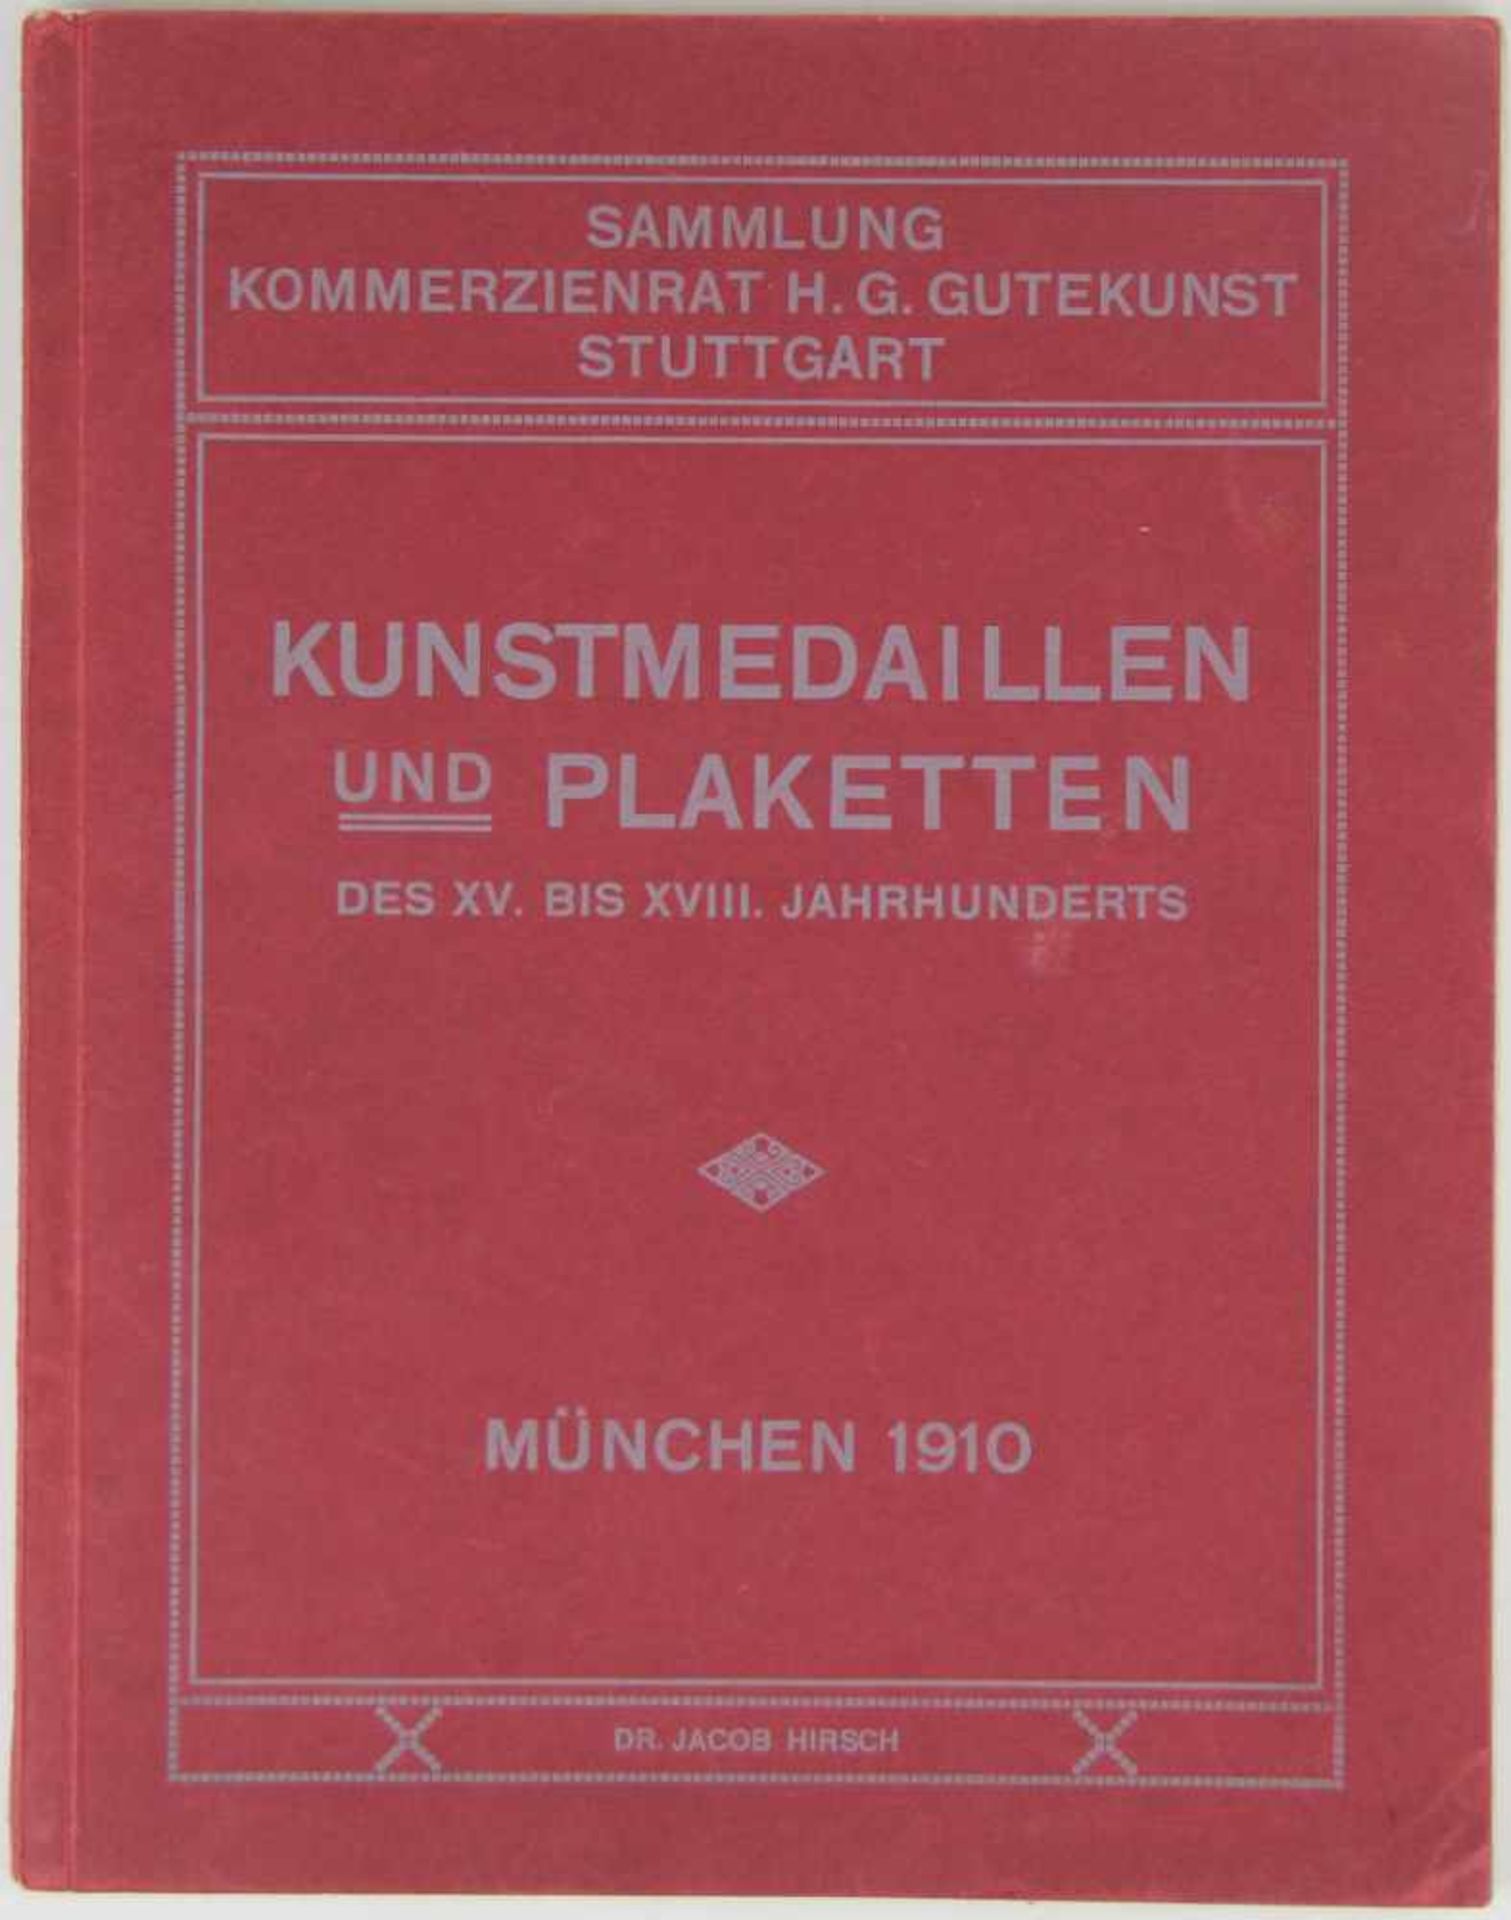 Numismatik. -Hirsch, Jacob:Auktionskatalog No. XXVIII: Sammlung Commerzienrat H. G. Gutekunst